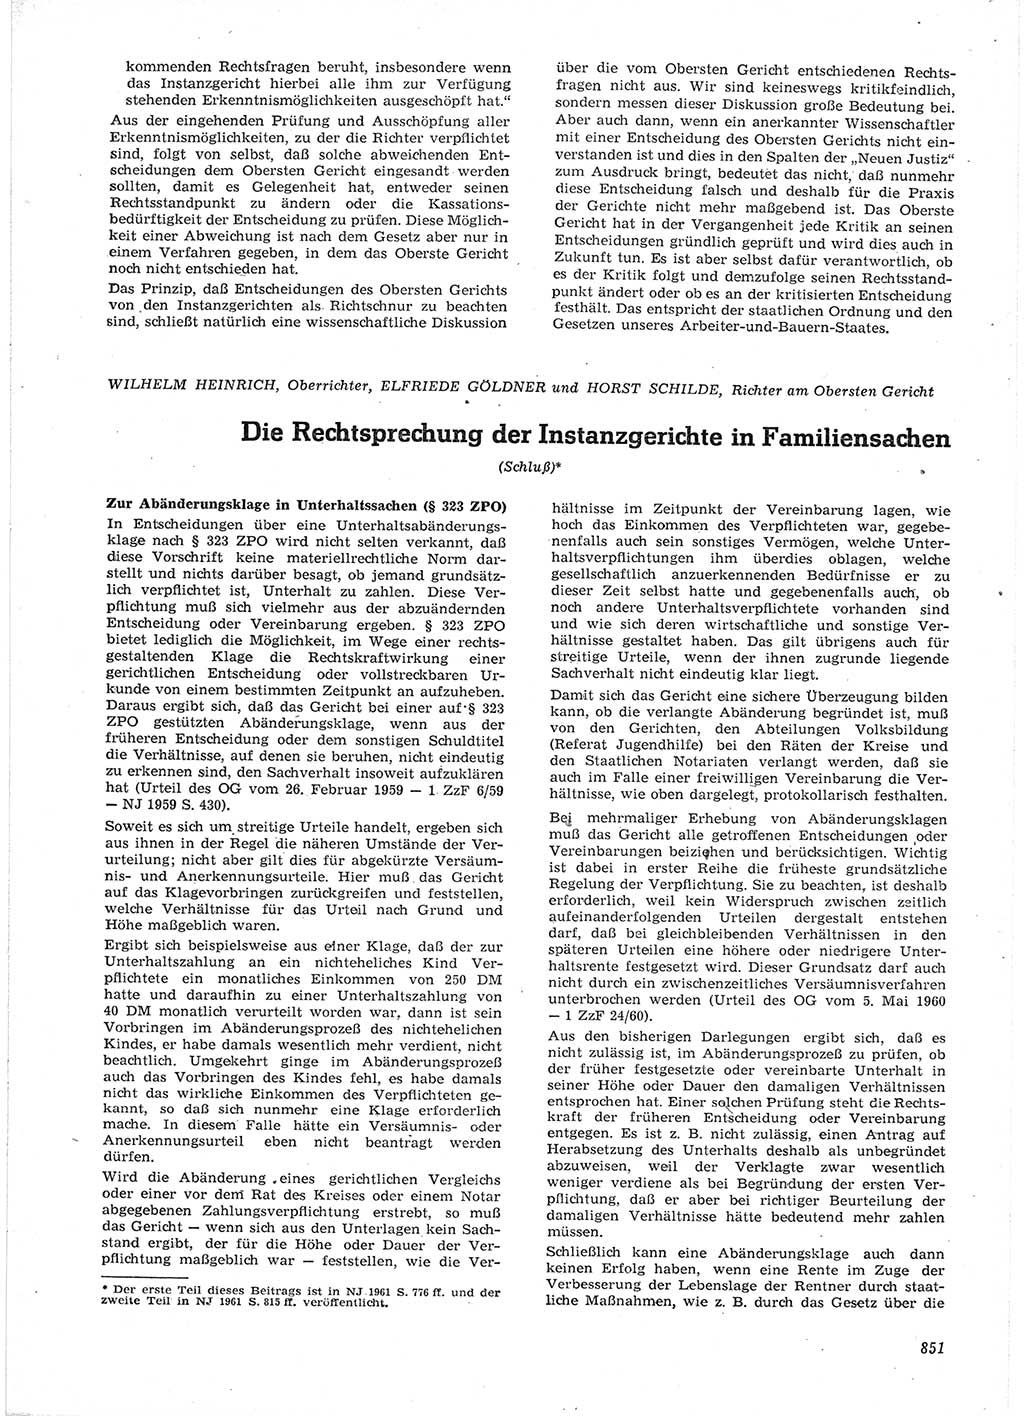 Neue Justiz (NJ), Zeitschrift für Recht und Rechtswissenschaft [Deutsche Demokratische Republik (DDR)], 15. Jahrgang 1961, Seite 851 (NJ DDR 1961, S. 851)